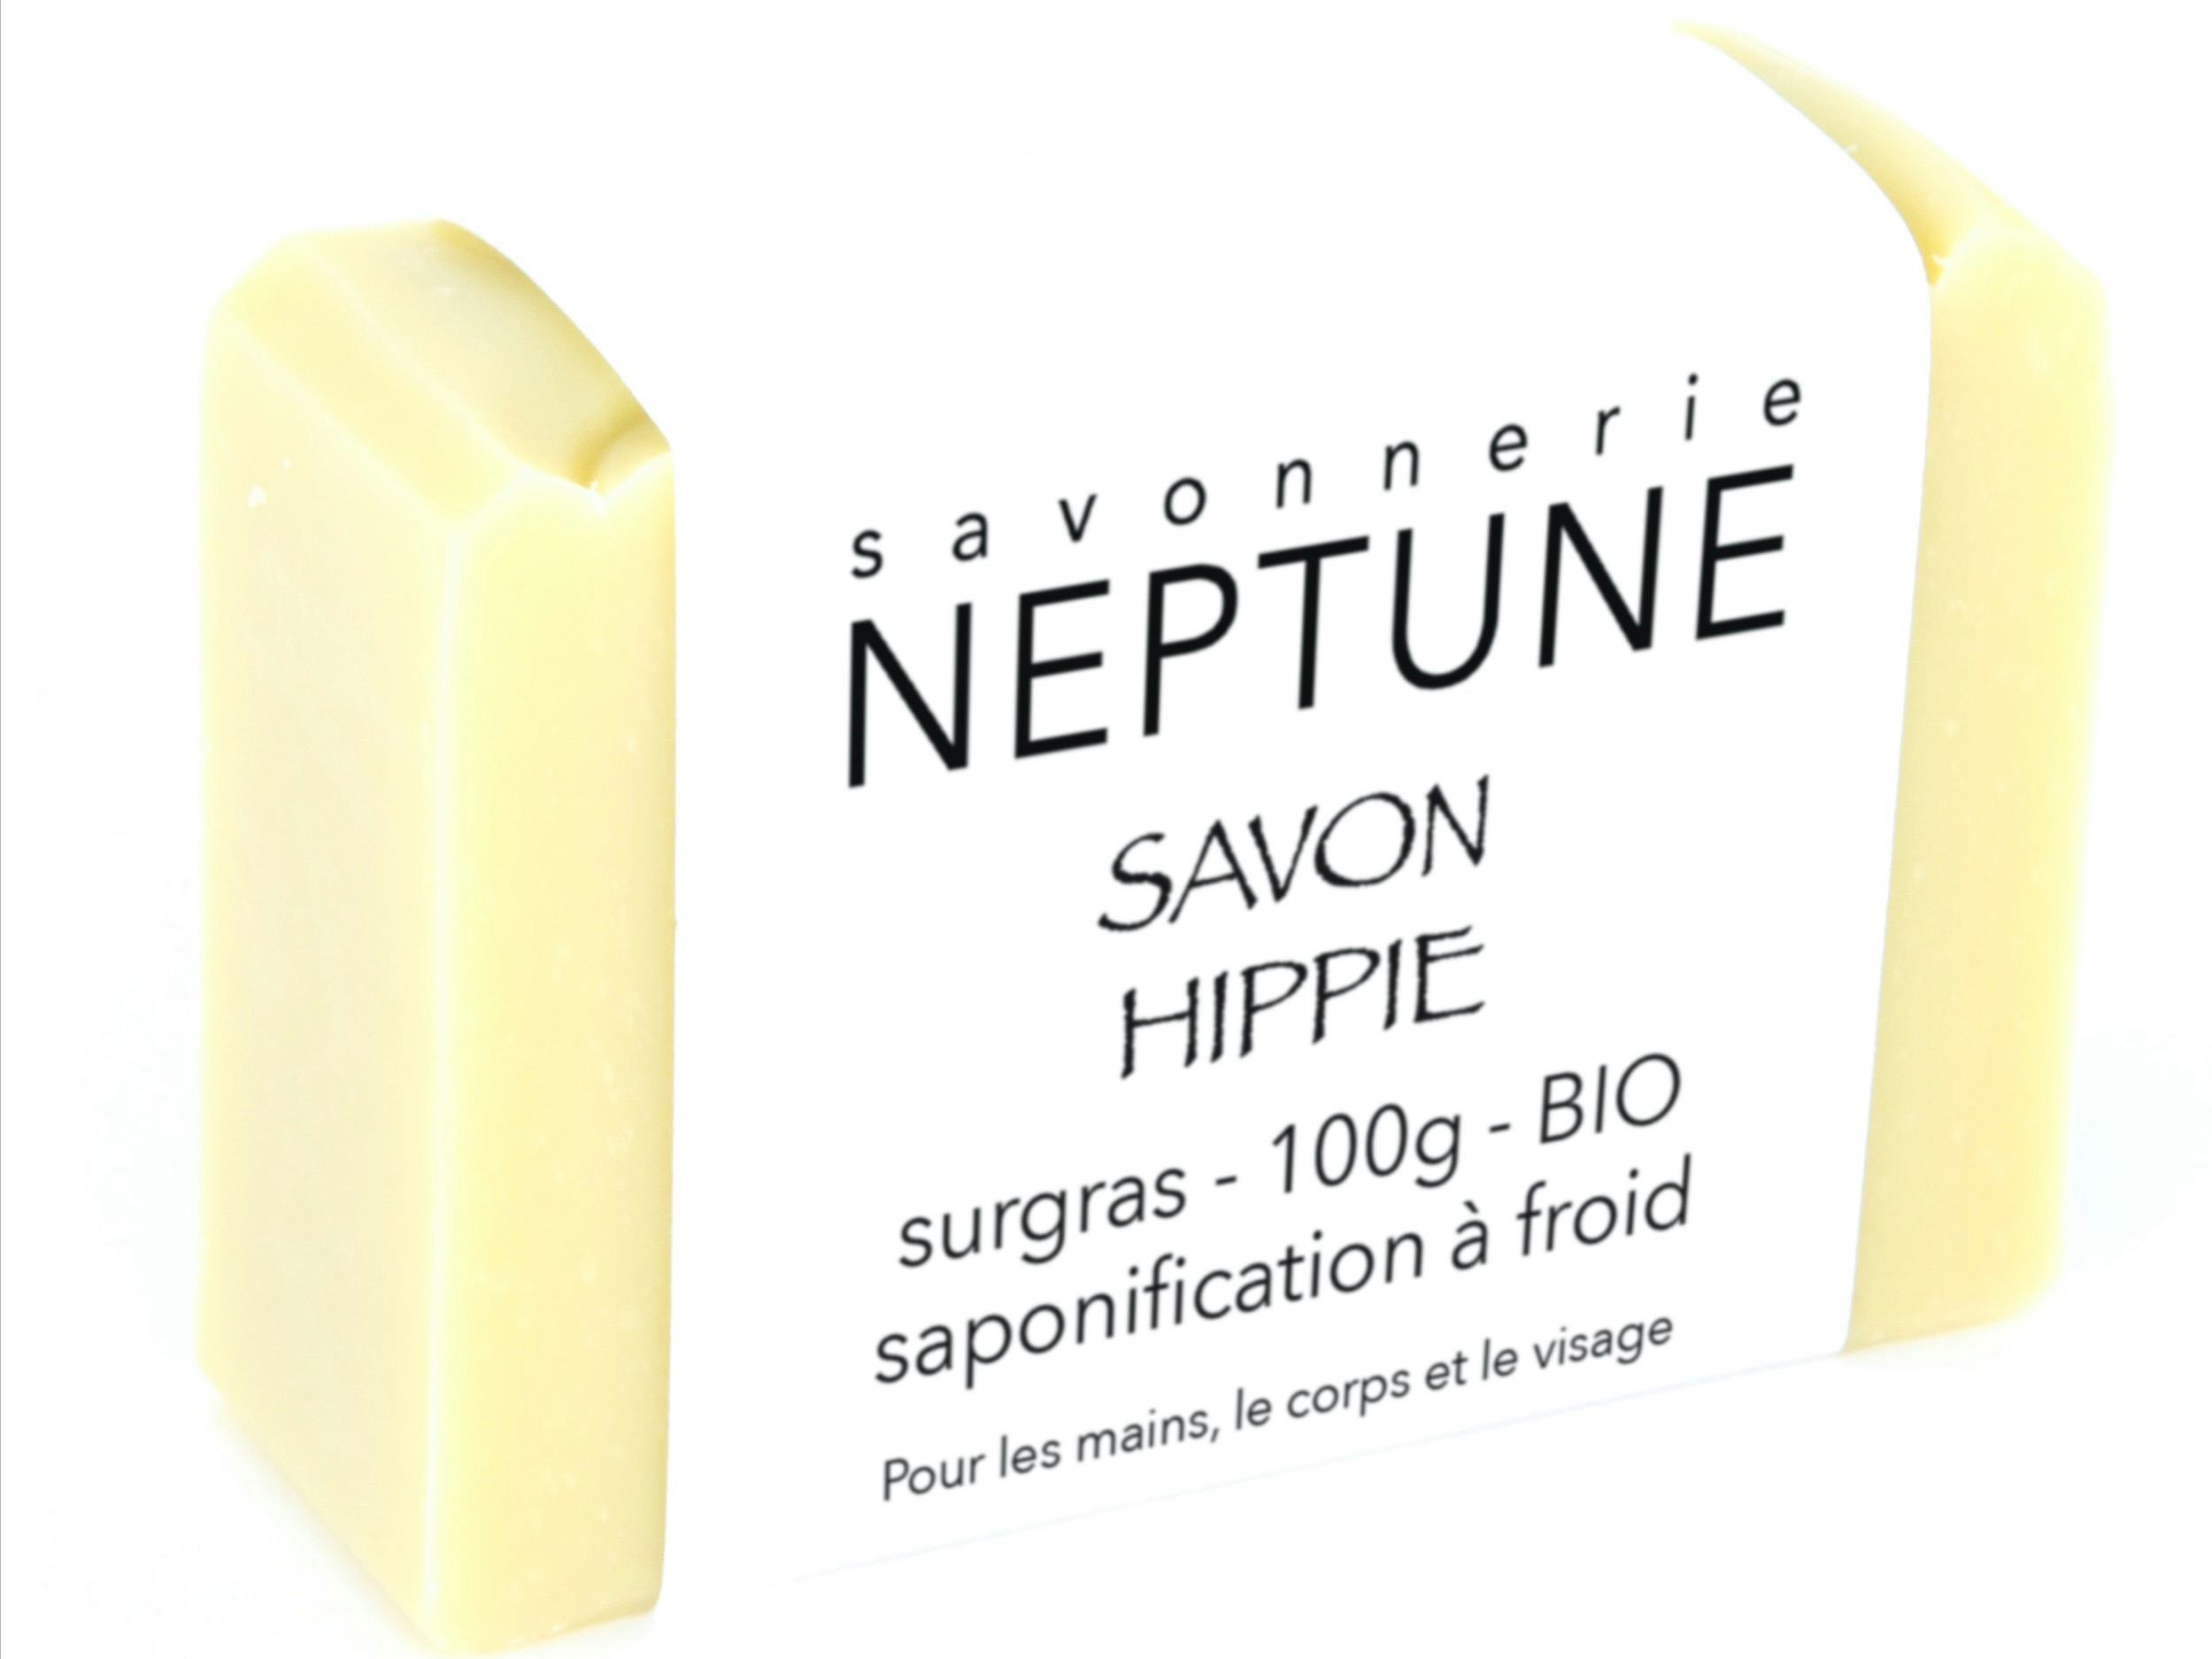 Savon hippie - bio, artisanal product for direct sale in Switzerland